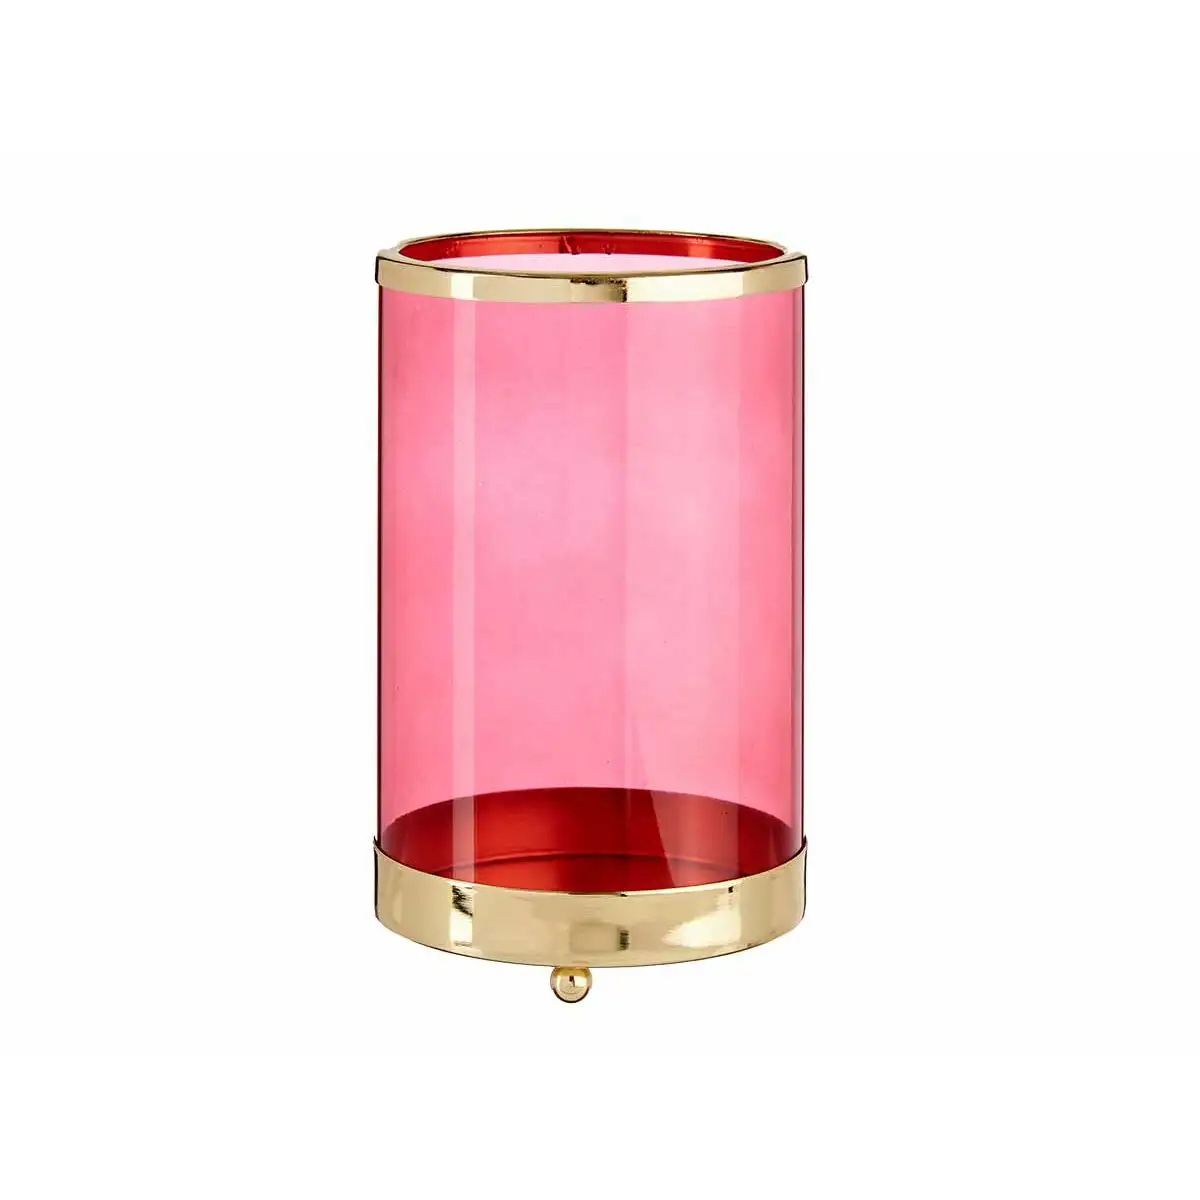 Bougeoir rose dore cylindre metal verre 12 2 x 19 5 x 12 2 cm _9945. DIAYTAR SENEGAL - Où Chaque Détail Compte. Naviguez à travers notre gamme variée et choisissez des articles qui ajoutent une touche spéciale à votre quotidien, toujours avec qualité et style.